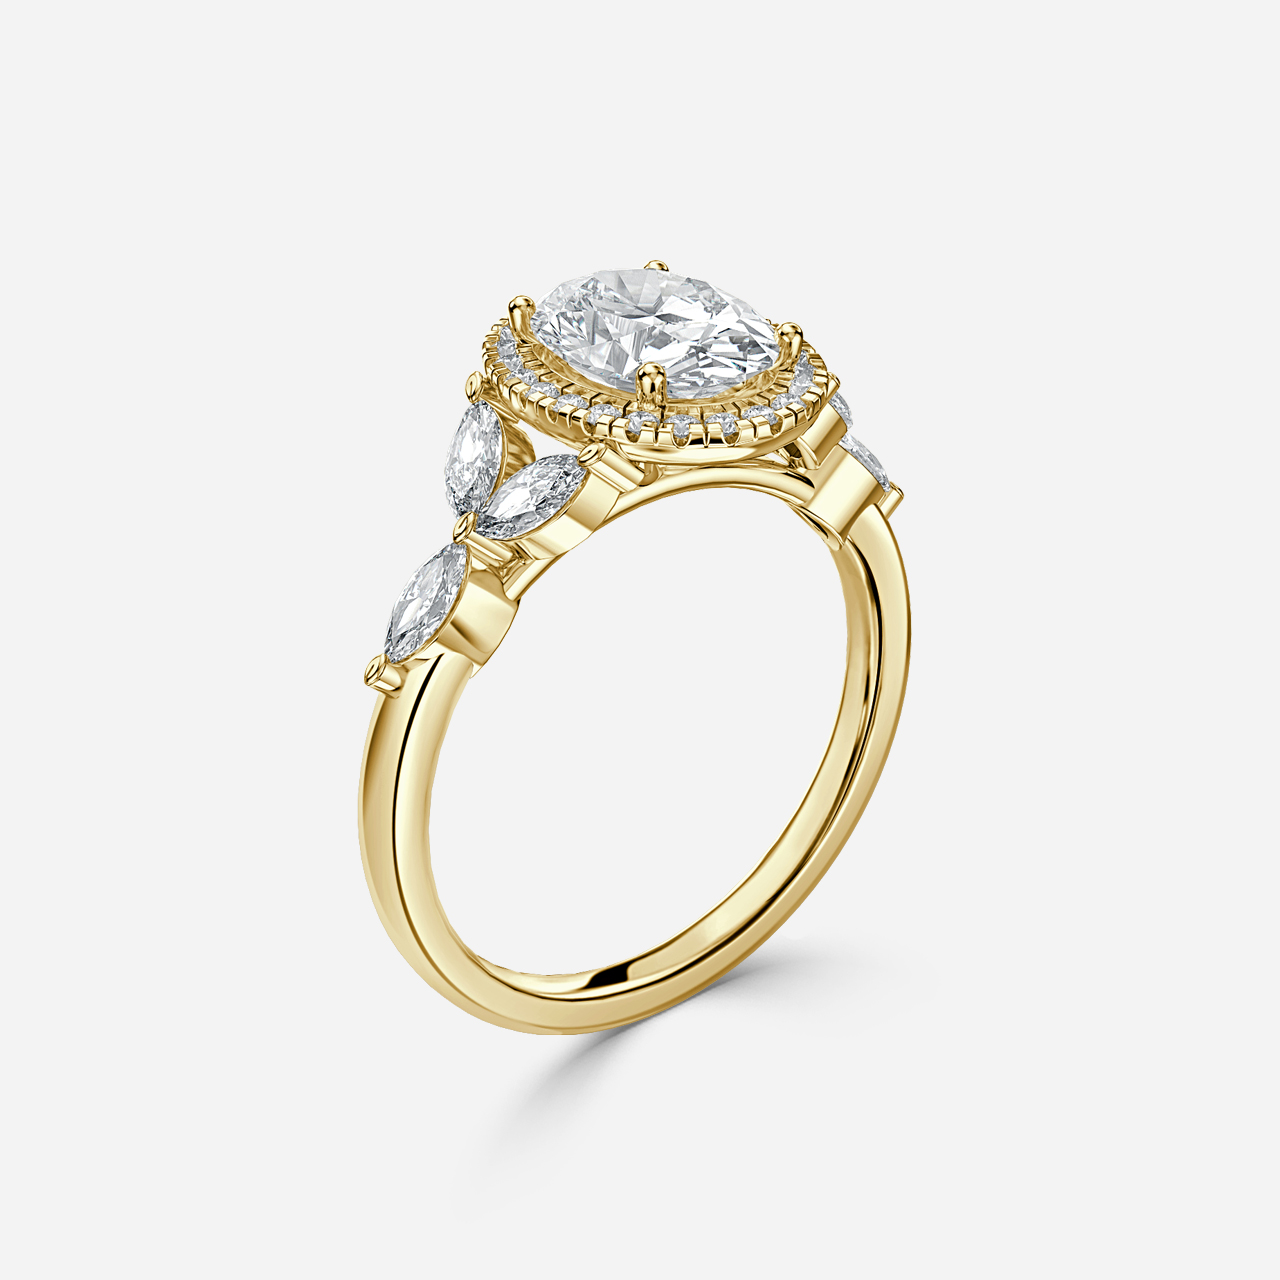 Elizabeth Yellow Gold Halo Engagement Ring